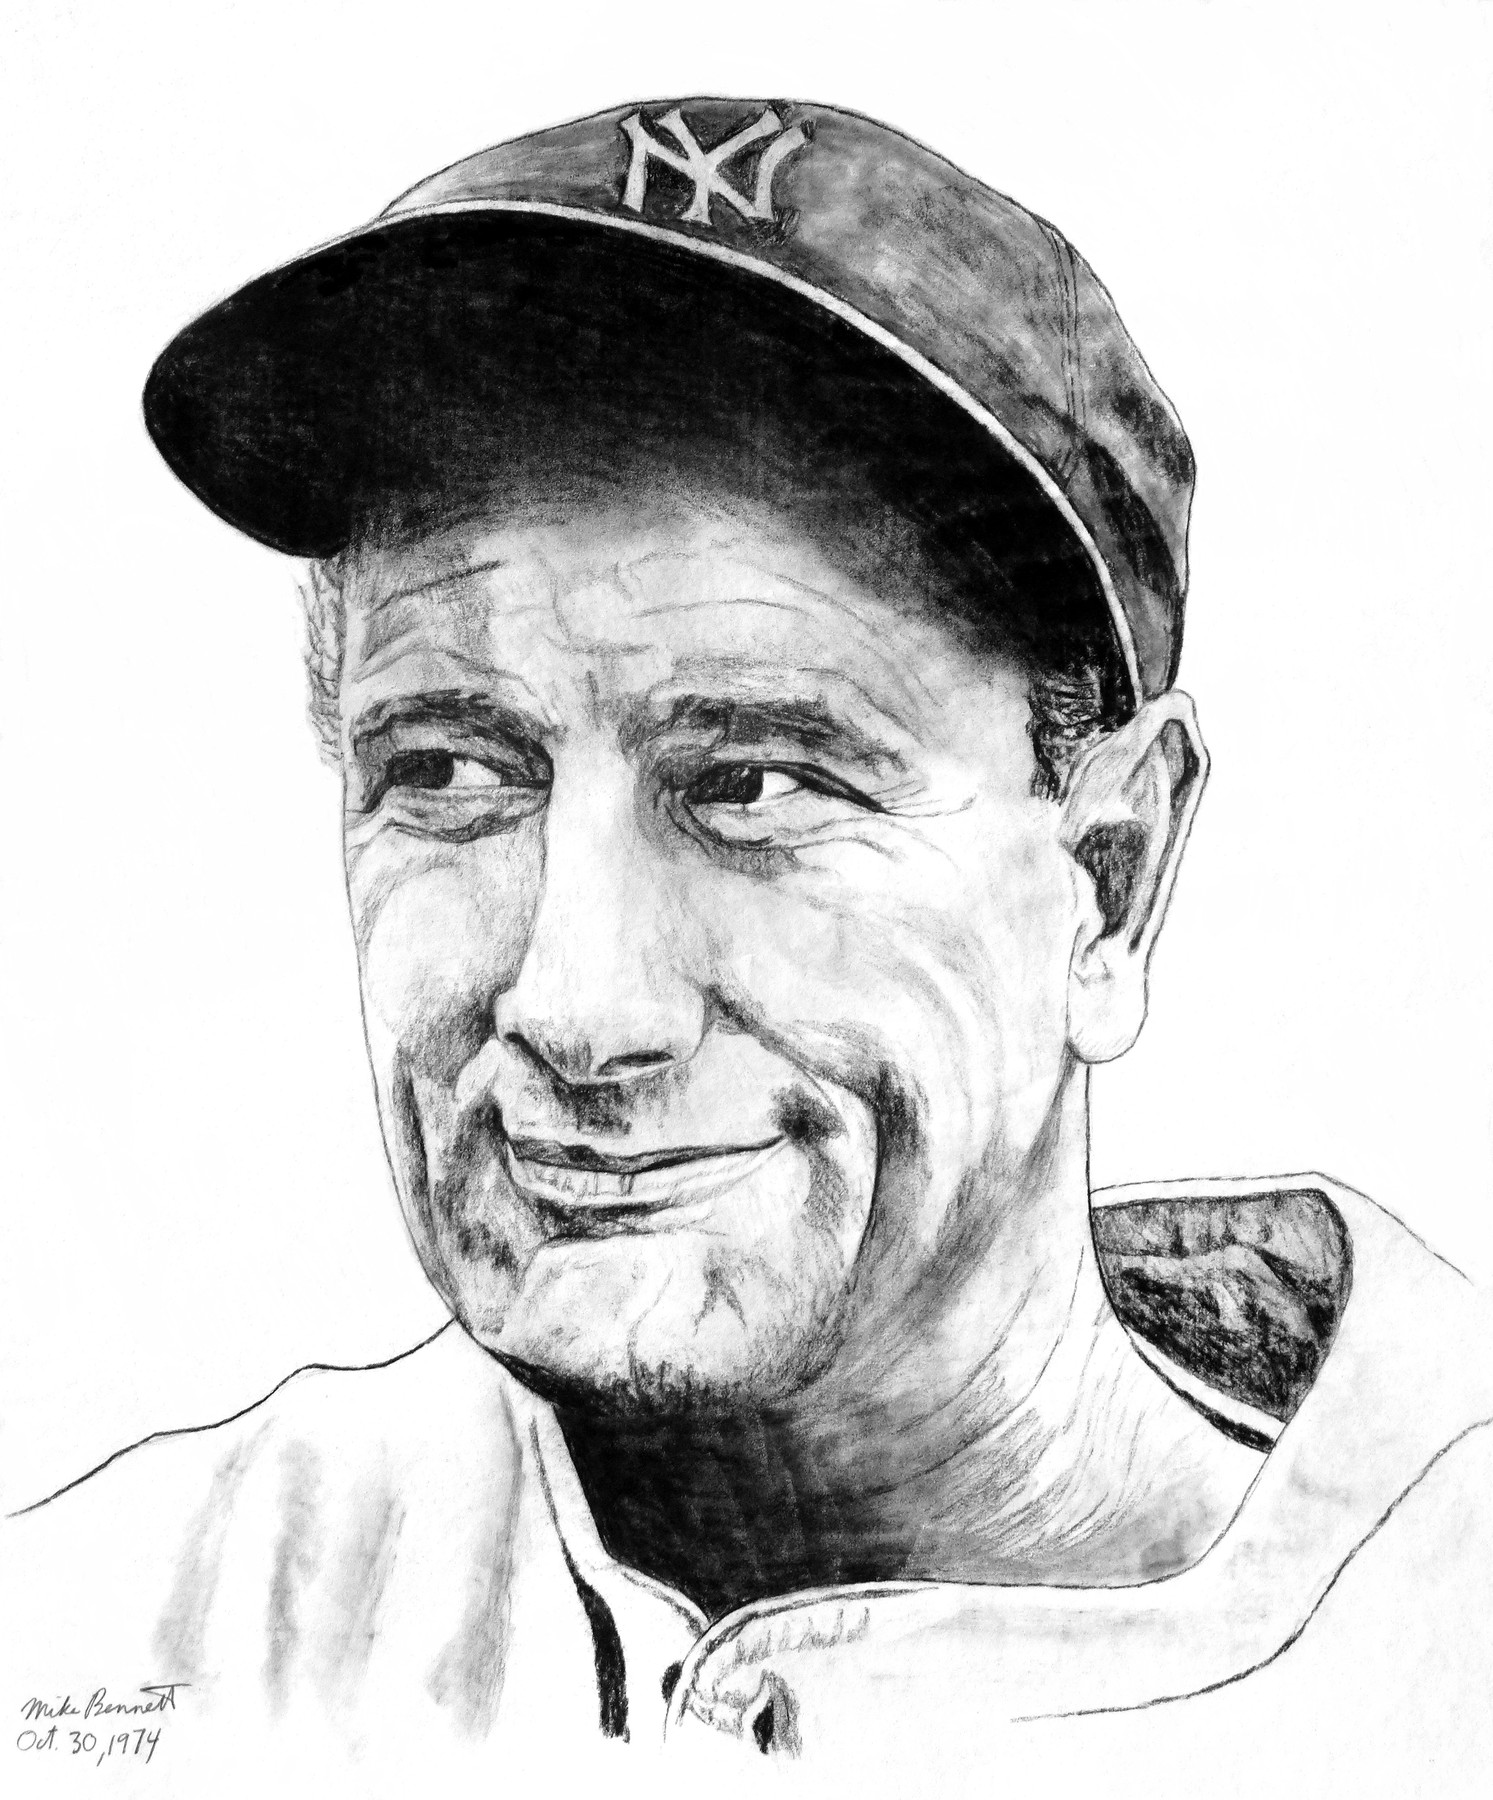 New York Yankees Lou Gehrig 'Luckiest Man' Speech Canvas Print